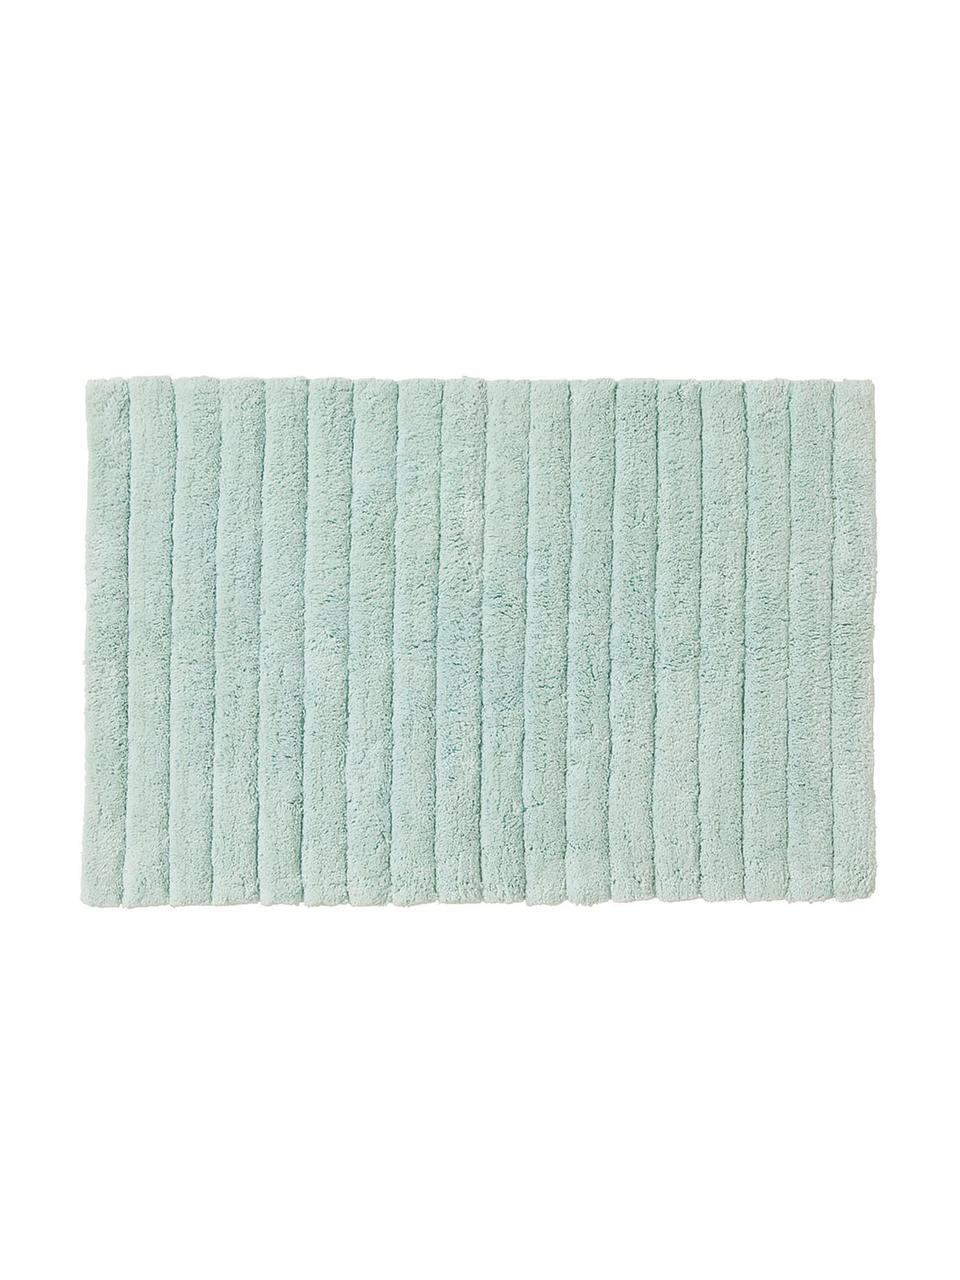 Flauschiger Badvorleger Board in Mintgrün, Baumwolle,
schwere Qualität, 1900 g/m², Mintgrün, 50 x 60 cm